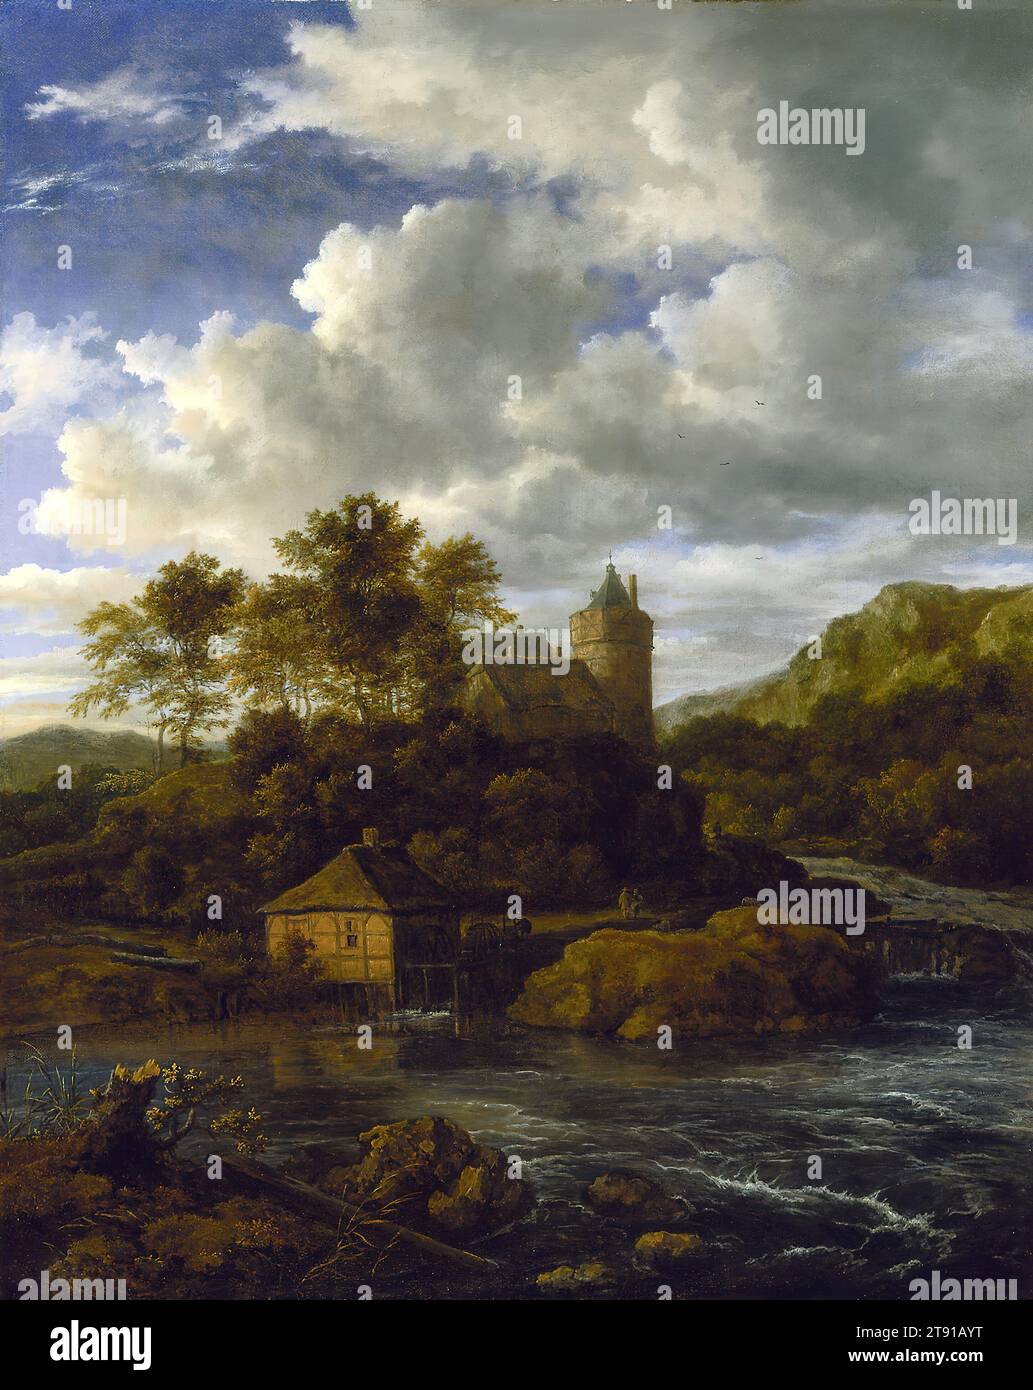 Castle and Watermill by a River, um 1670, Jacob van Ruisdael, Niederländisch, 1628 oder 1629–1682, 27 x 1/2 Zoll (68,58 x 57,15 cm) (Leinwand), Öl auf Leinwand, Niederlande, 17. Jahrhundert, Jacob van Ruisdael, der berühmteste niederländische Landschaftsmaler der 1600er Jahre komponierte diese imaginären Landschaften spät in seiner Karriere. Die Fachwerkhäuser sind typisch für Deutschland, nicht für Holland. Auch die hügelige, manchmal bergige Topographie ist fehl am Platz – Holland ist berüchtigt flach. Aber Drama, nicht Realismus, ist das, was van Ruisdael will. Er hebt die schönen Kontraste der Natur hervor Stockfoto